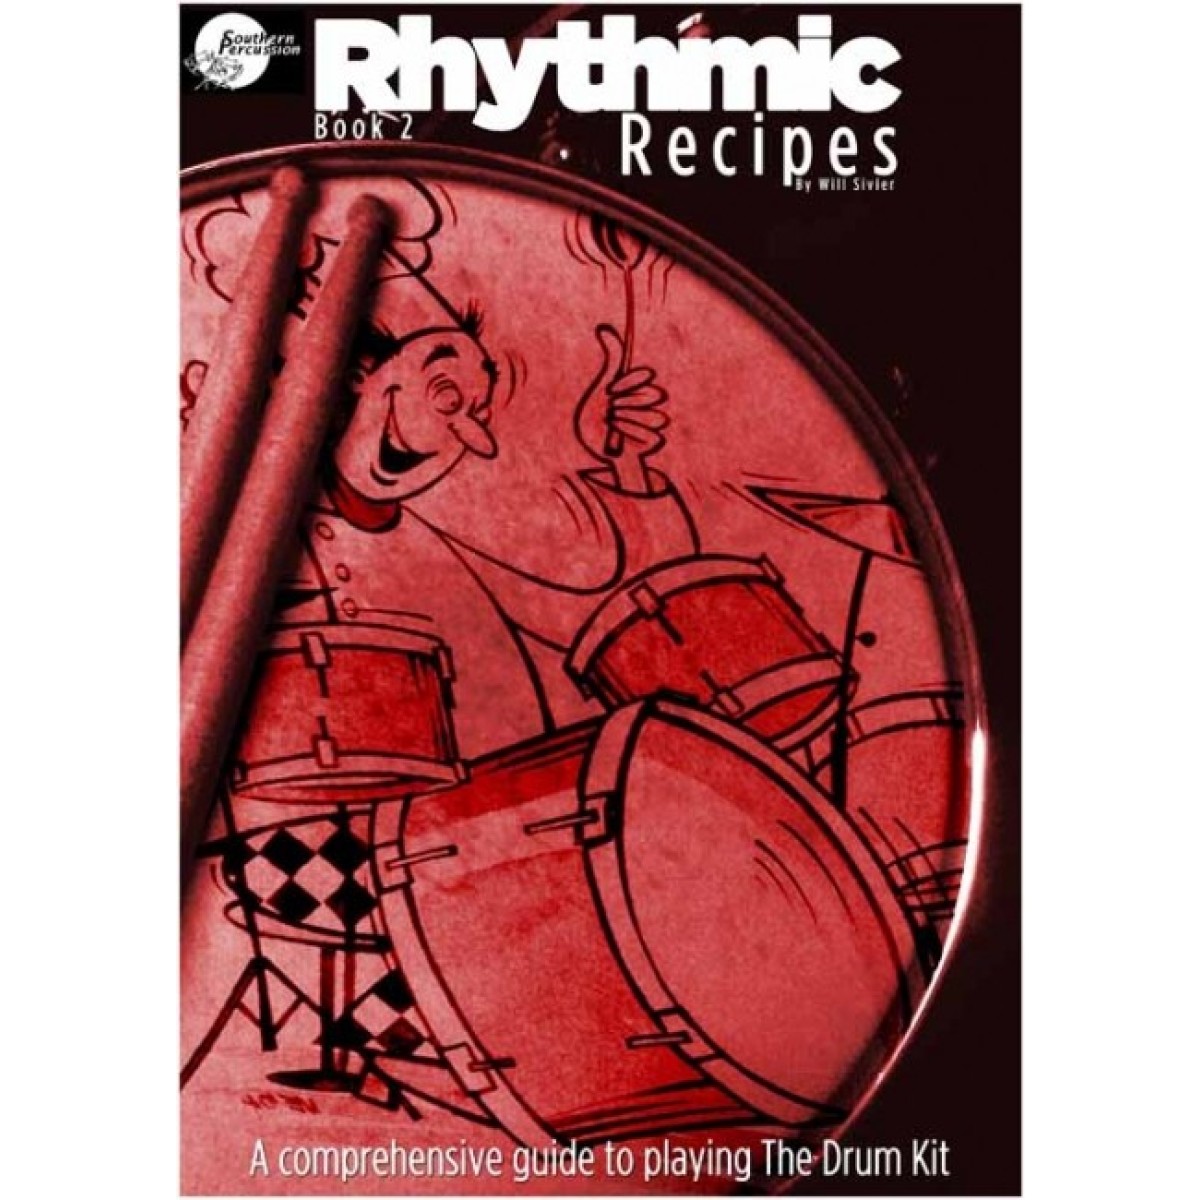 Rhythmic Recipes, Book 2